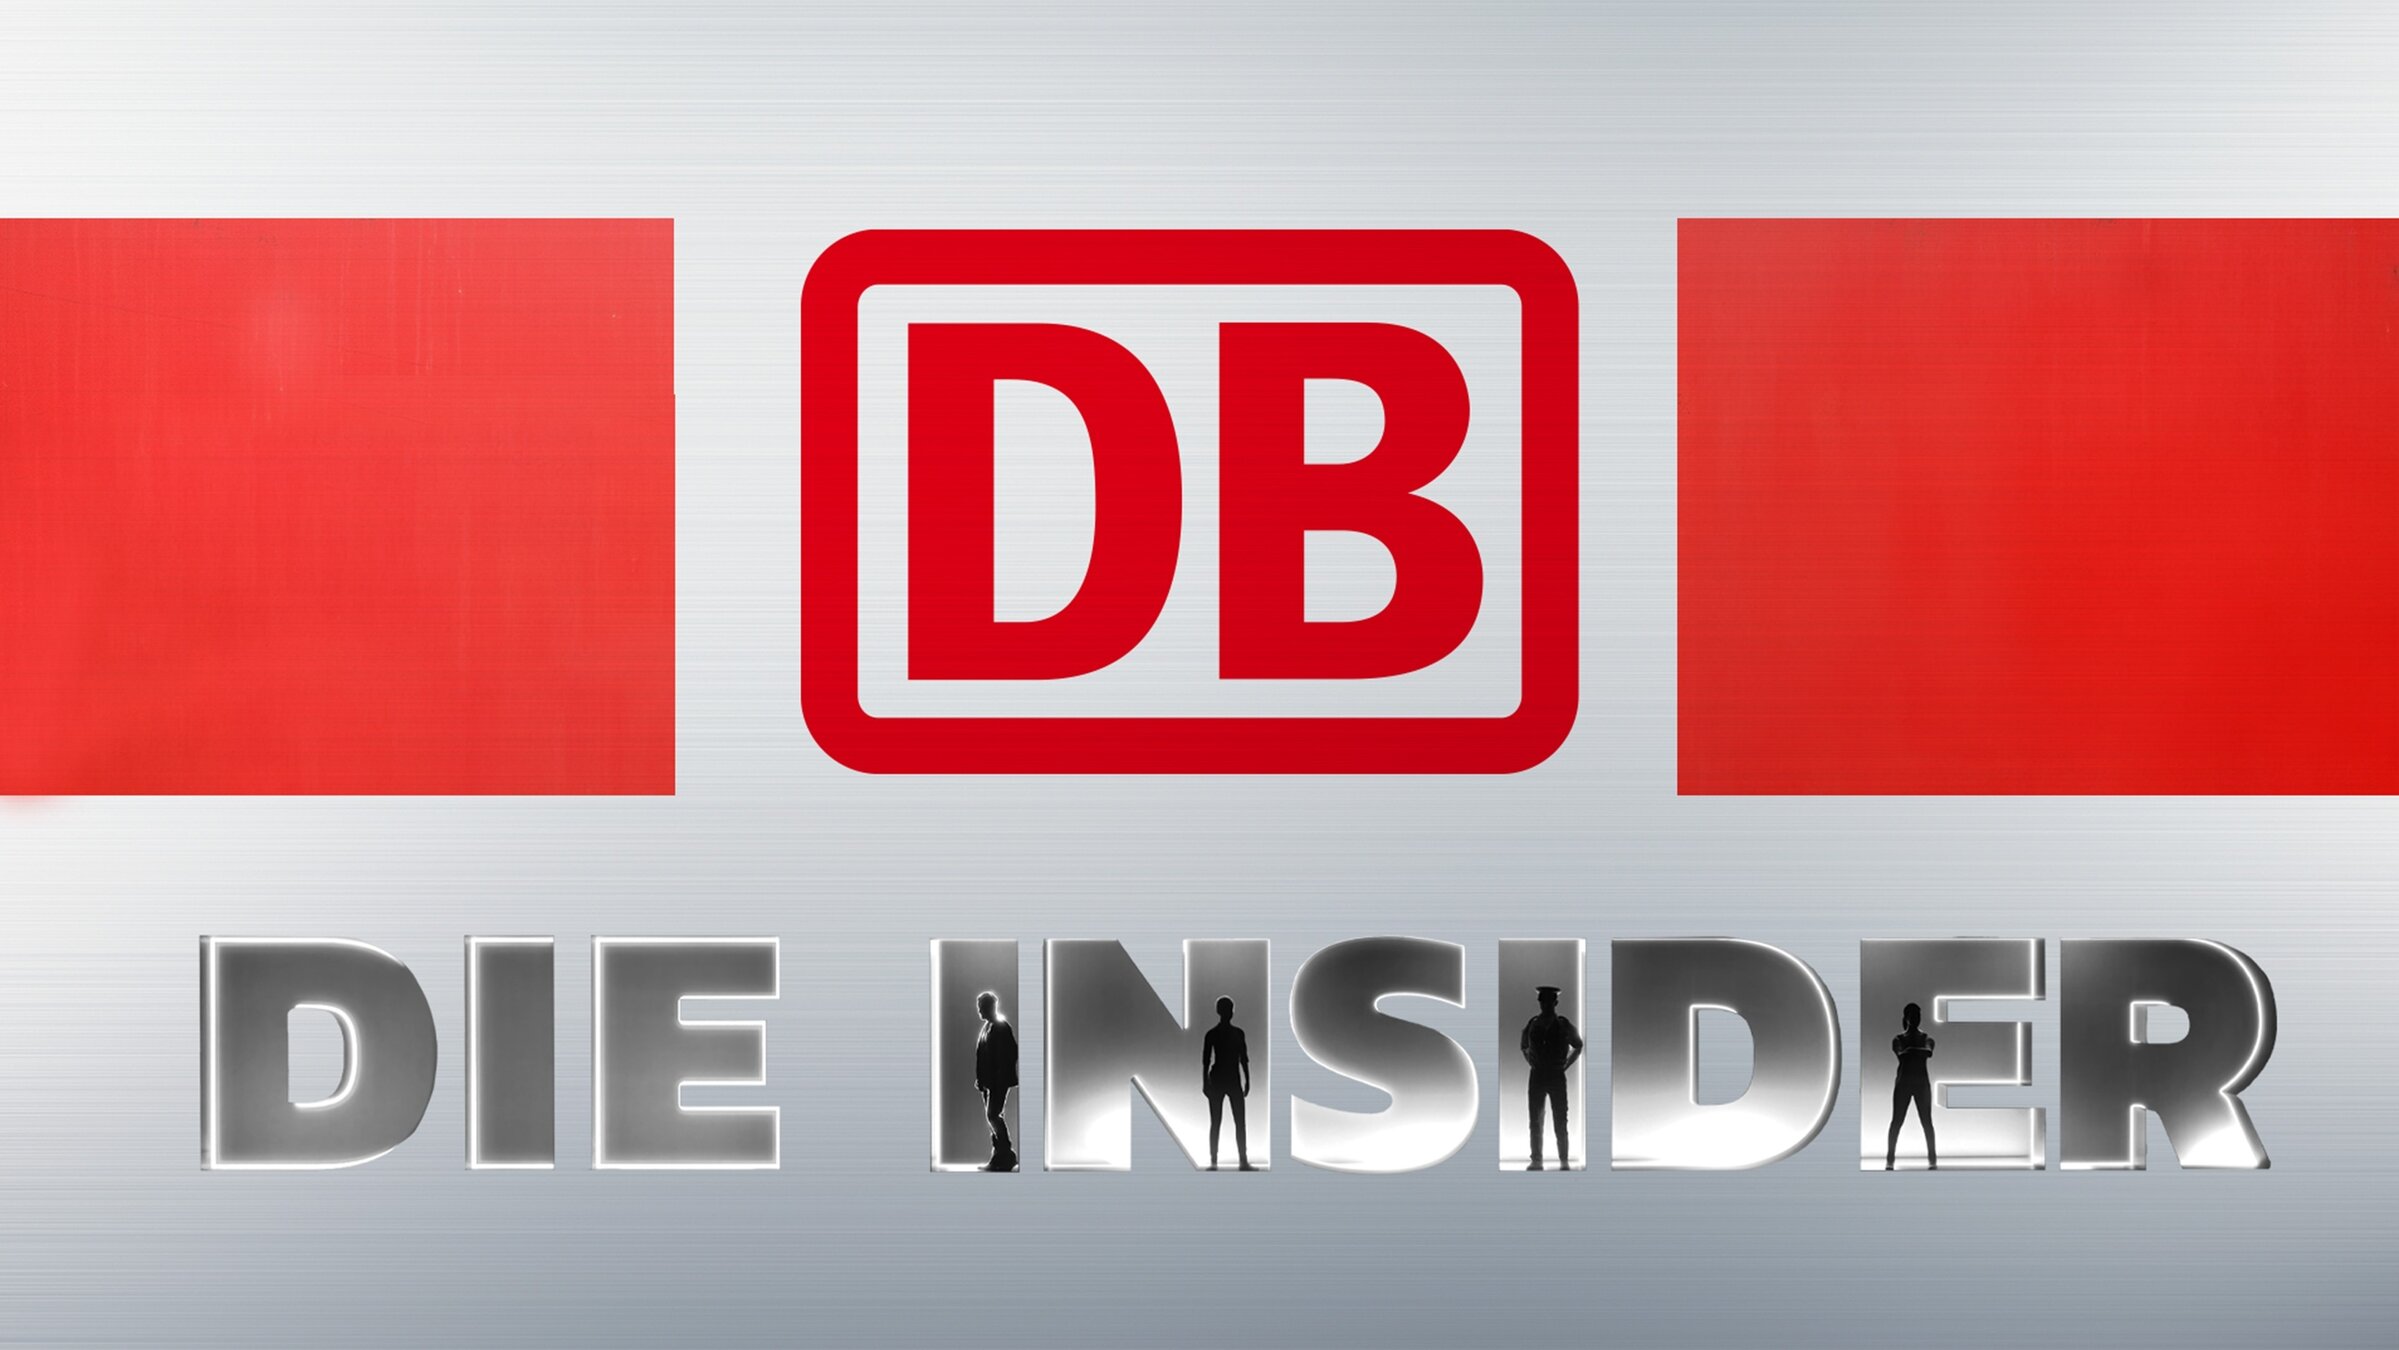 "Deutsche Bahn: Die Insider - Tricks hinter den Kulissen": Das Logo der Deutschen Bahn steht über dem Schriftzug "Die Insider".